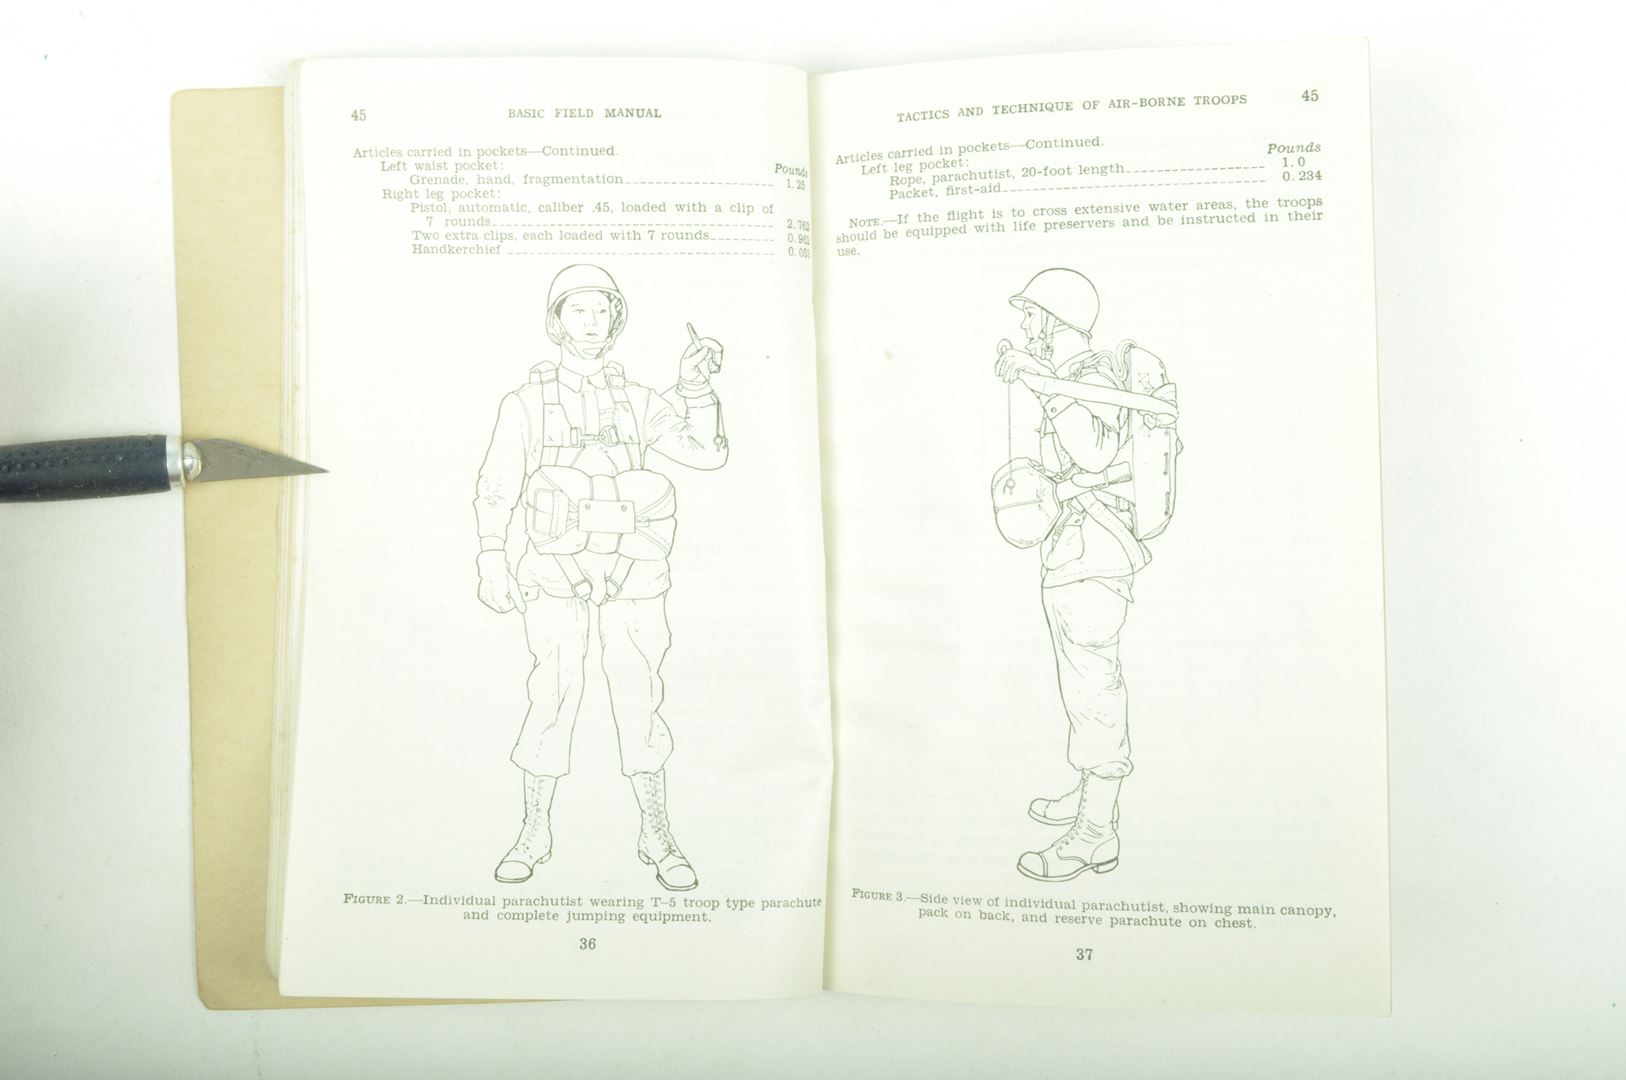 Manuel de campagne Parachutiste "Tactics and Technique of Airborne Troops" daté 1942